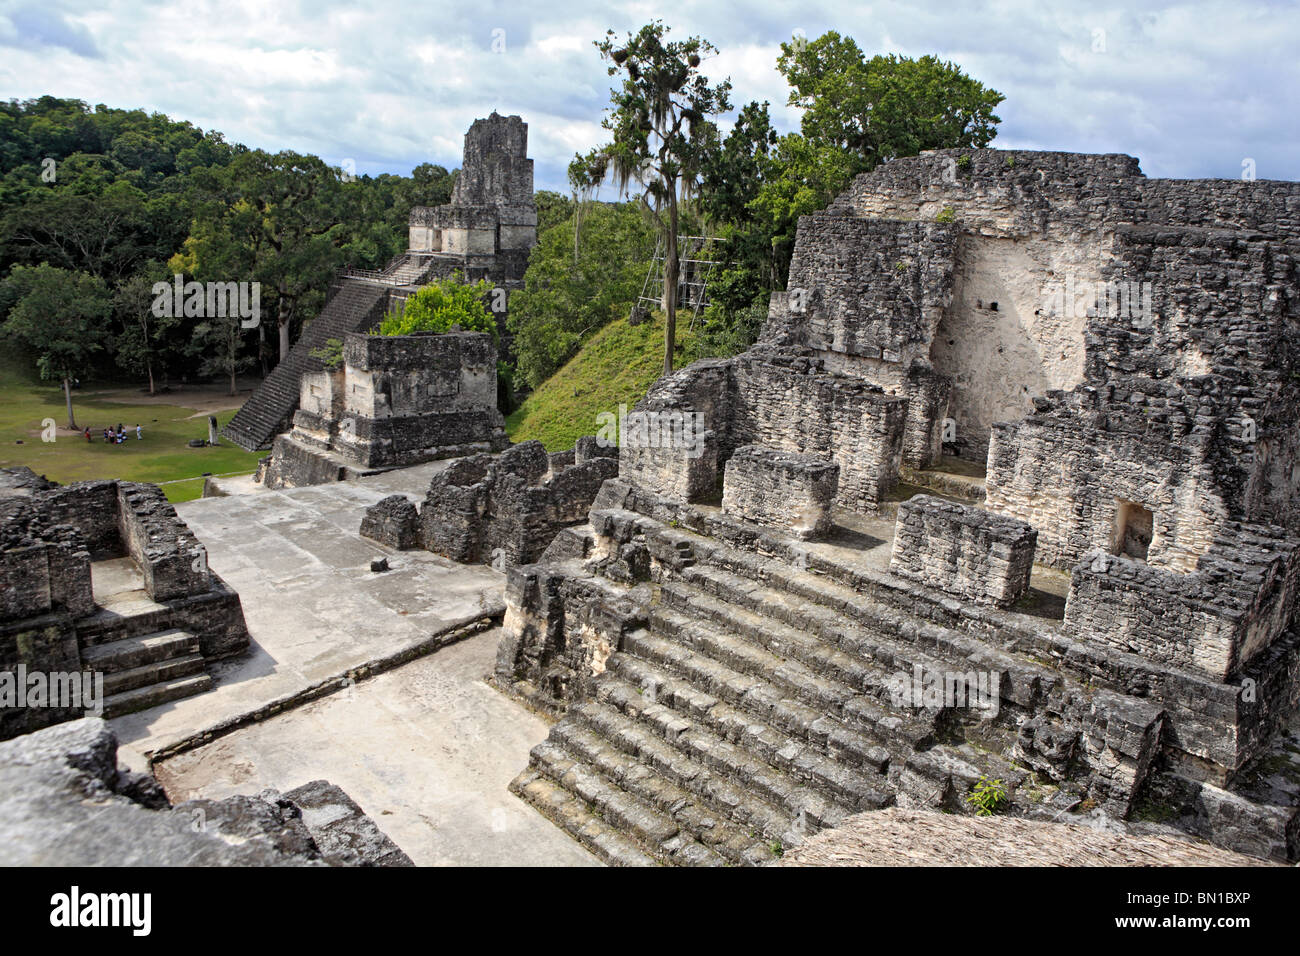 North Acropolis, Maya ruins of Tikal, near Flores, Guatemala Stock Photo